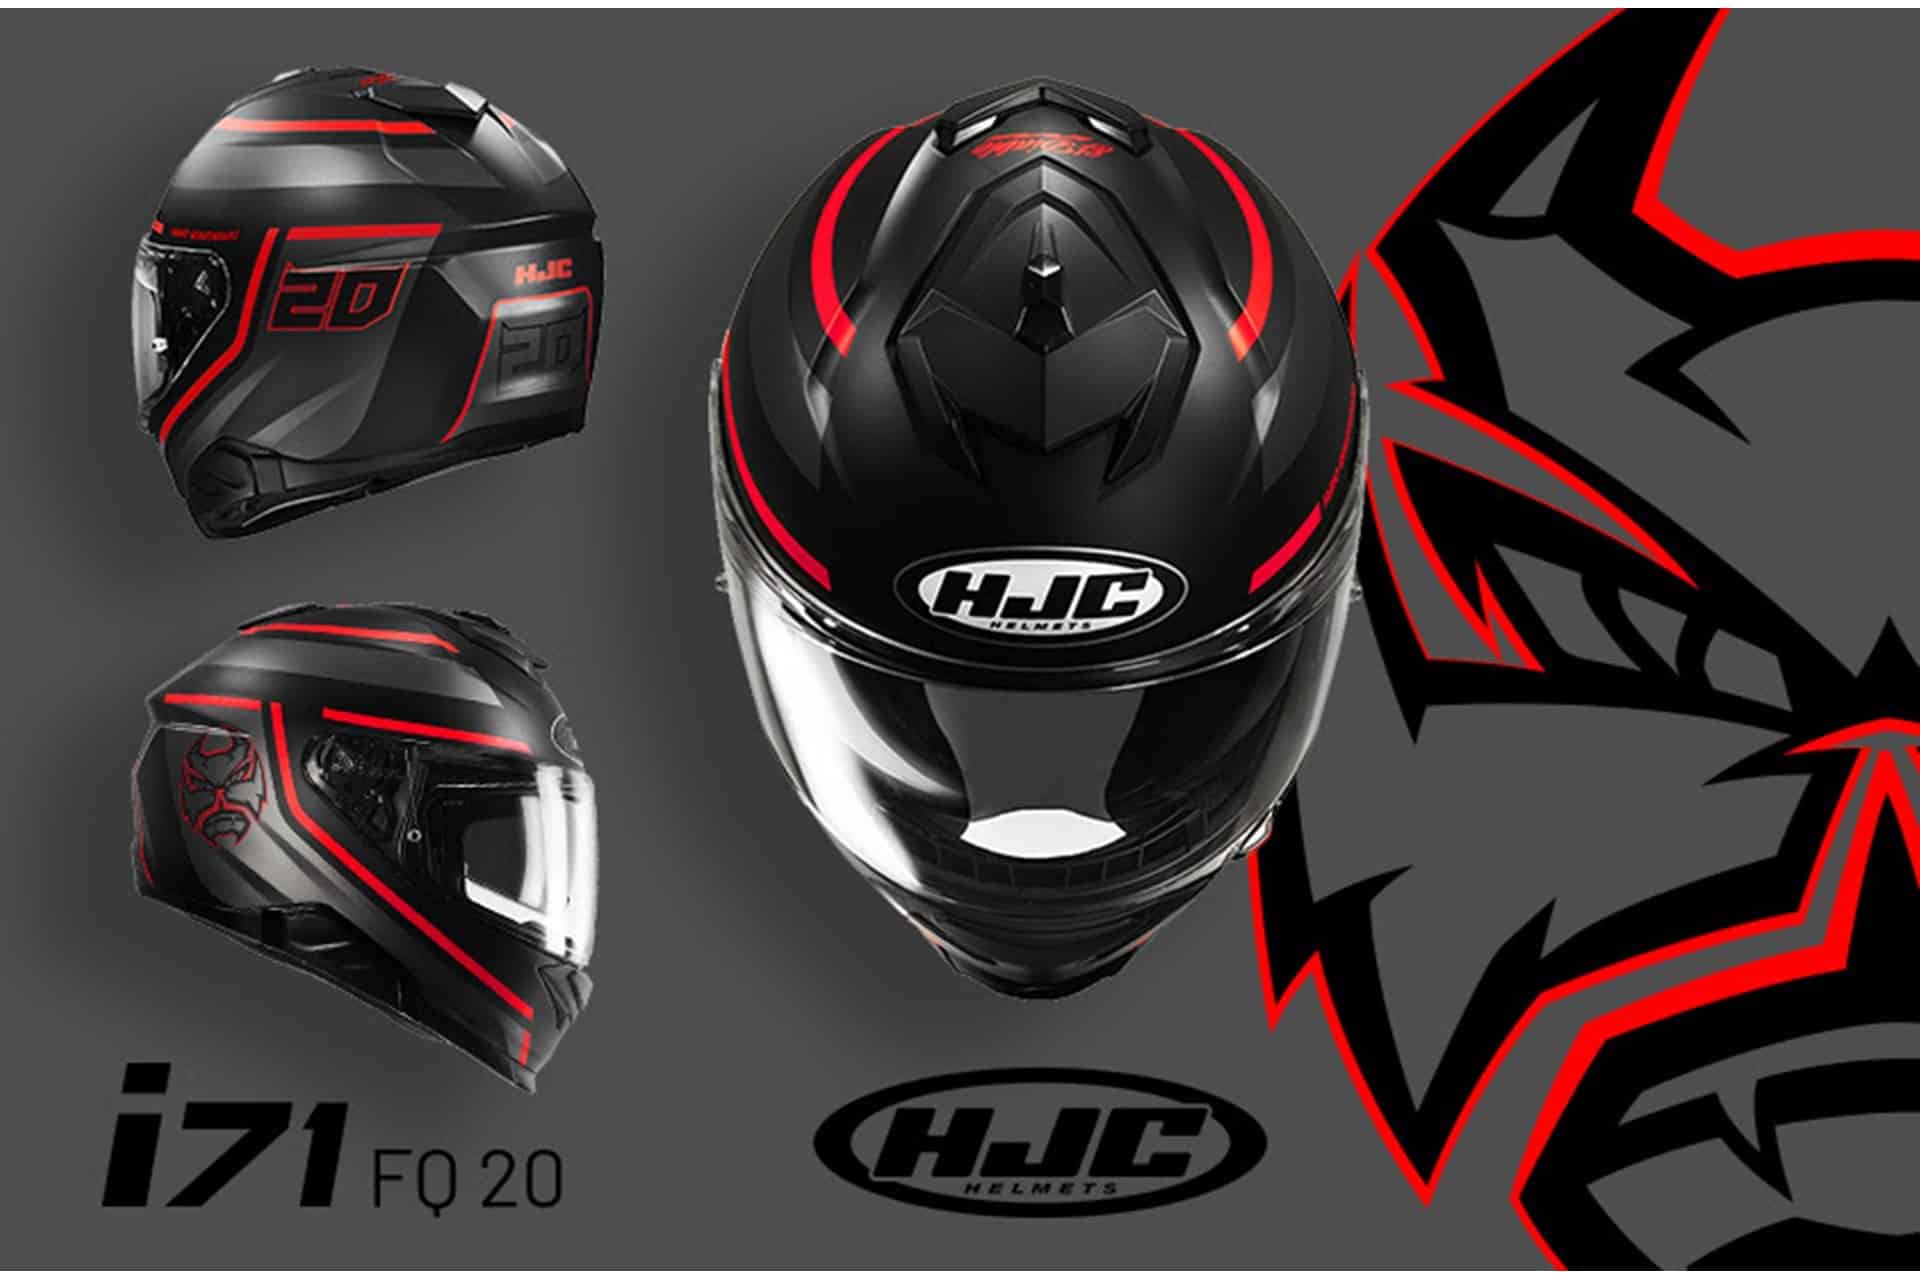 Los cascos HJC C10 e i71 ahora con gráficos colección Fabio Quartararo 2023